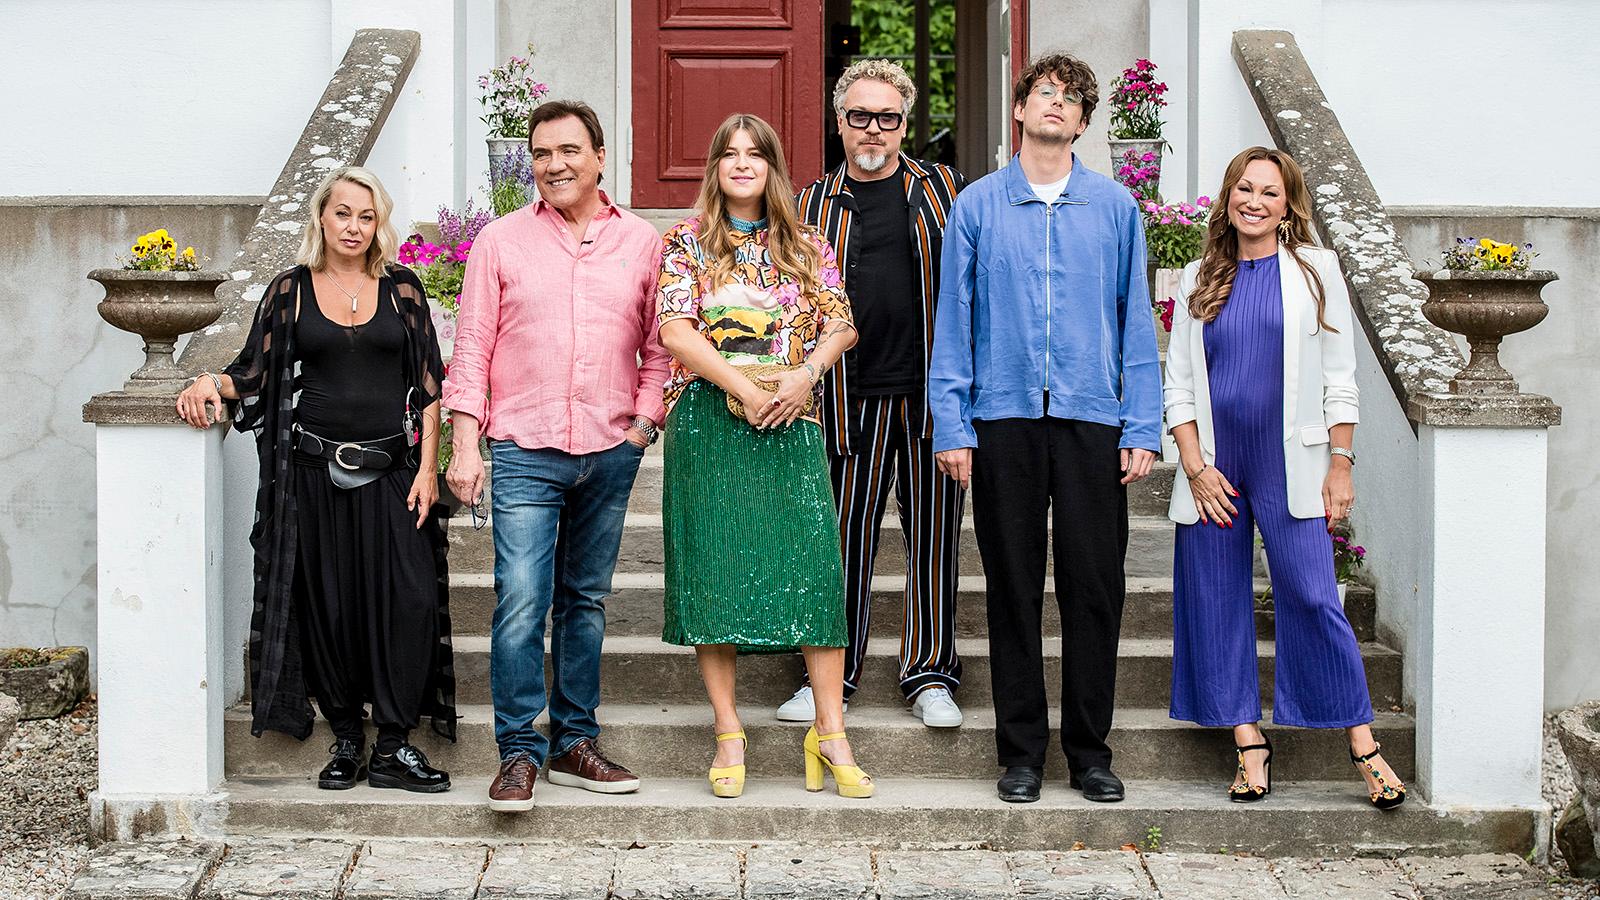 Albin Lee Meldau (tvåa från höger) deltog i ”Så mycket bättre” 2018 tillsammans med bland andra (från vänster) Louise Hoffsten, Christer Sjögren, Linnea Henriksson, Eric Gadd och Charlotte Perrelli.